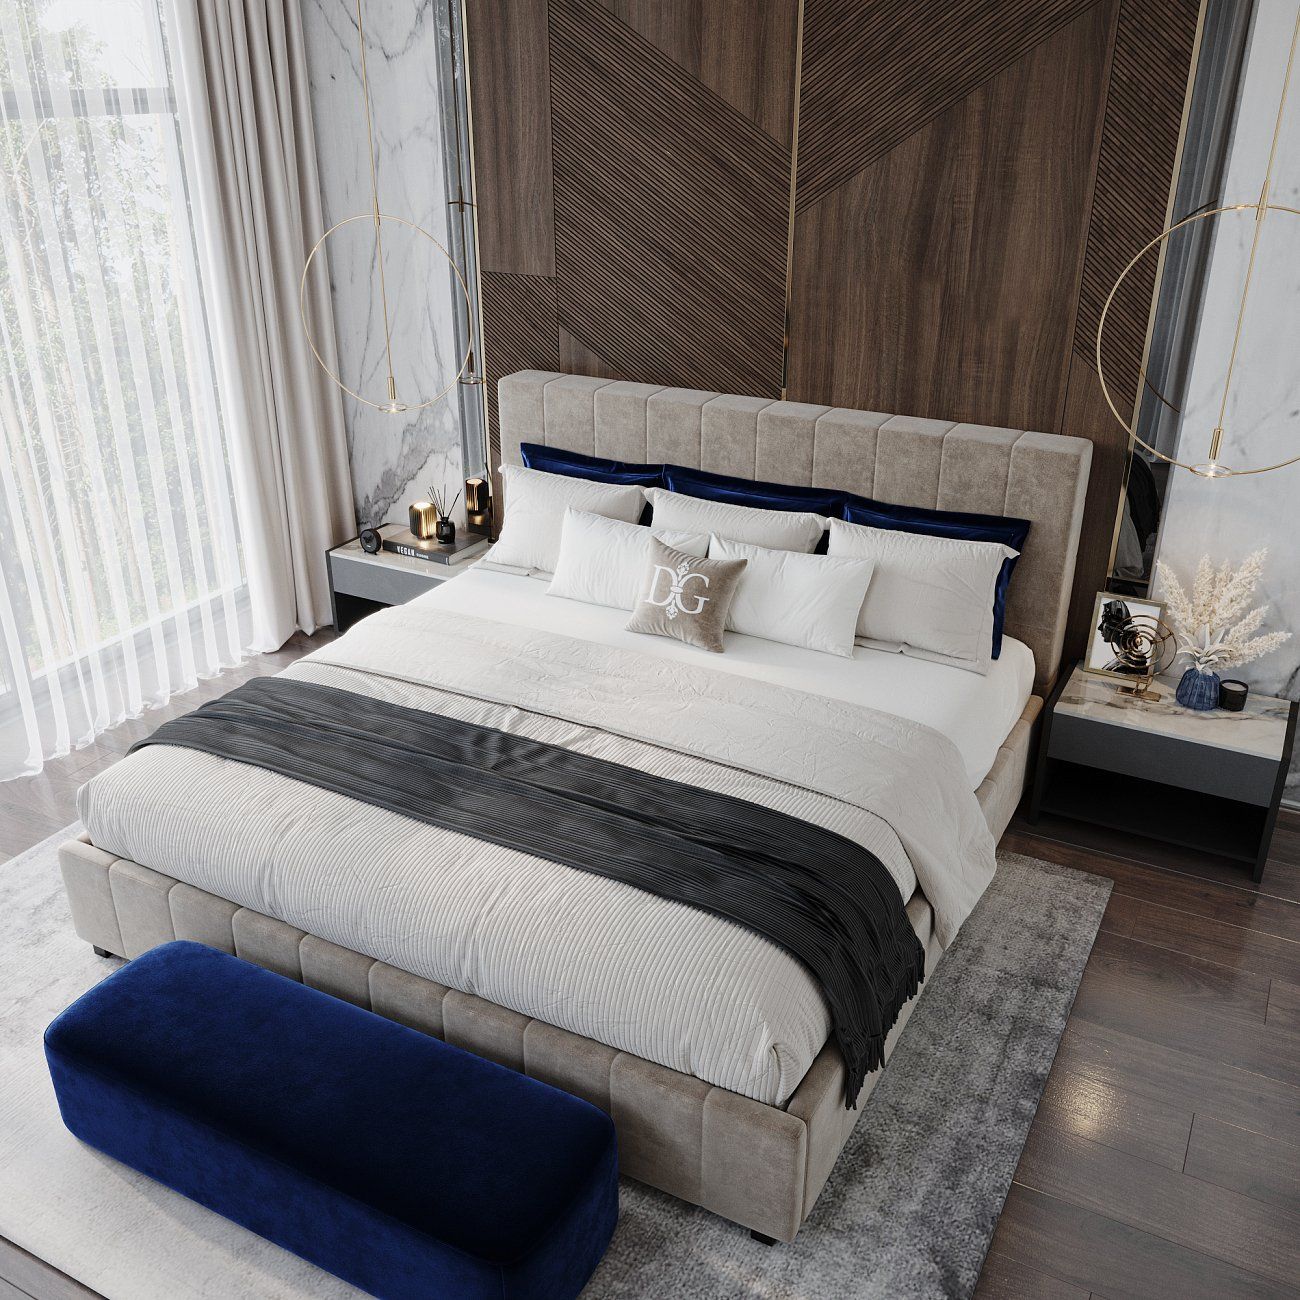 Кровать Shining Modern евро 200х200 см синяя